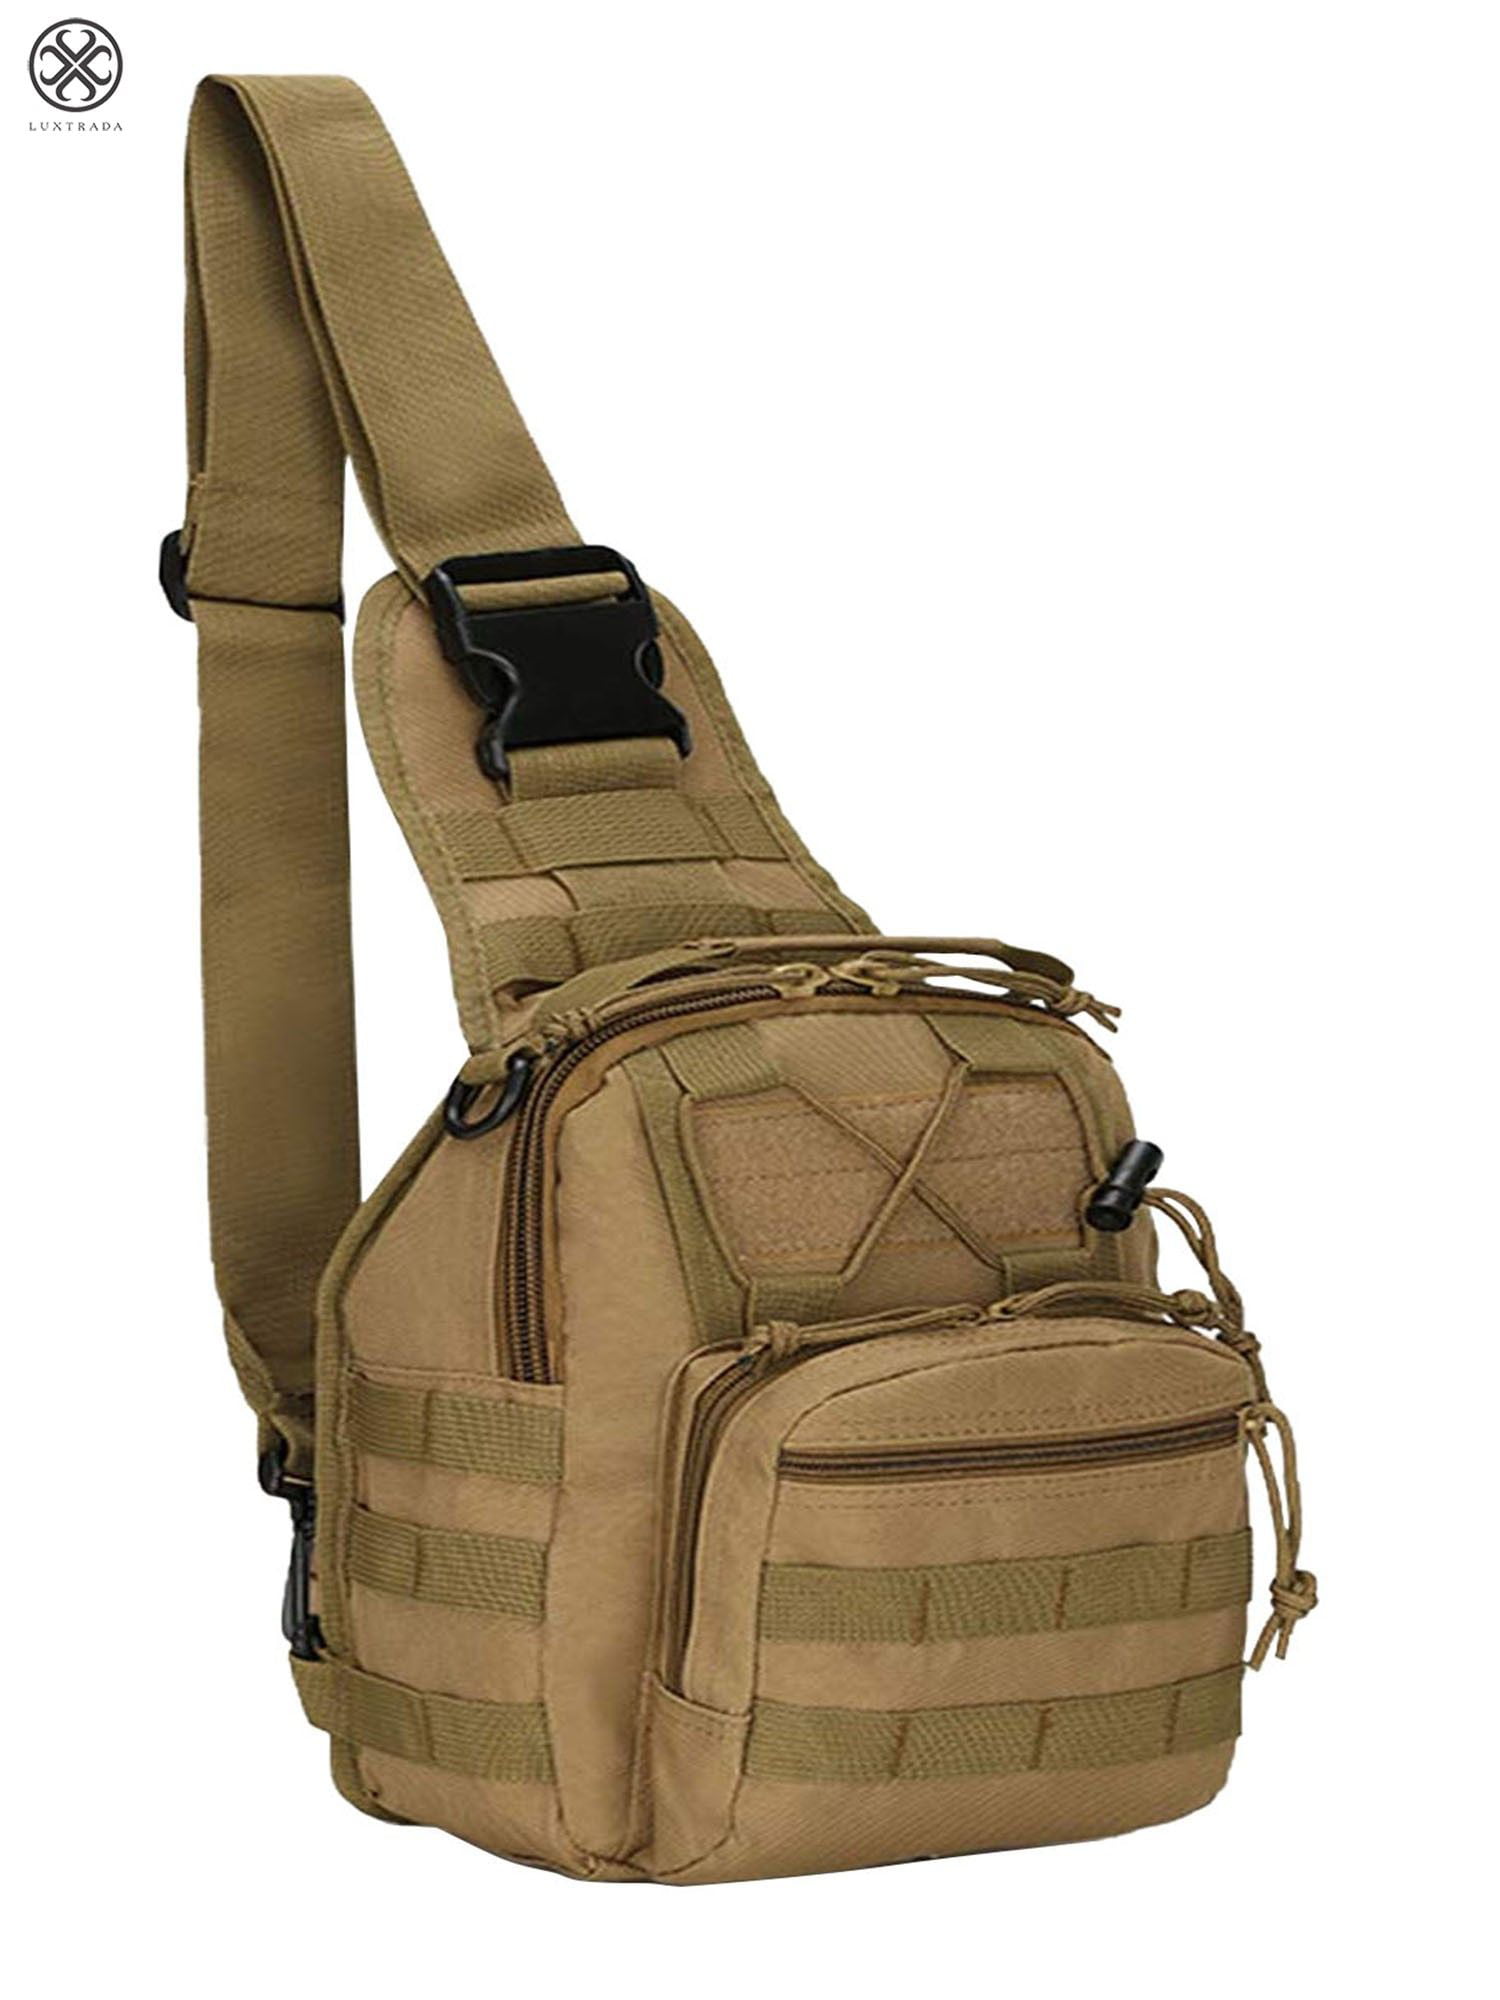 Backpack Shoulder Outdoor Trekking Travel Backpack Tactical Sling Military Bag 